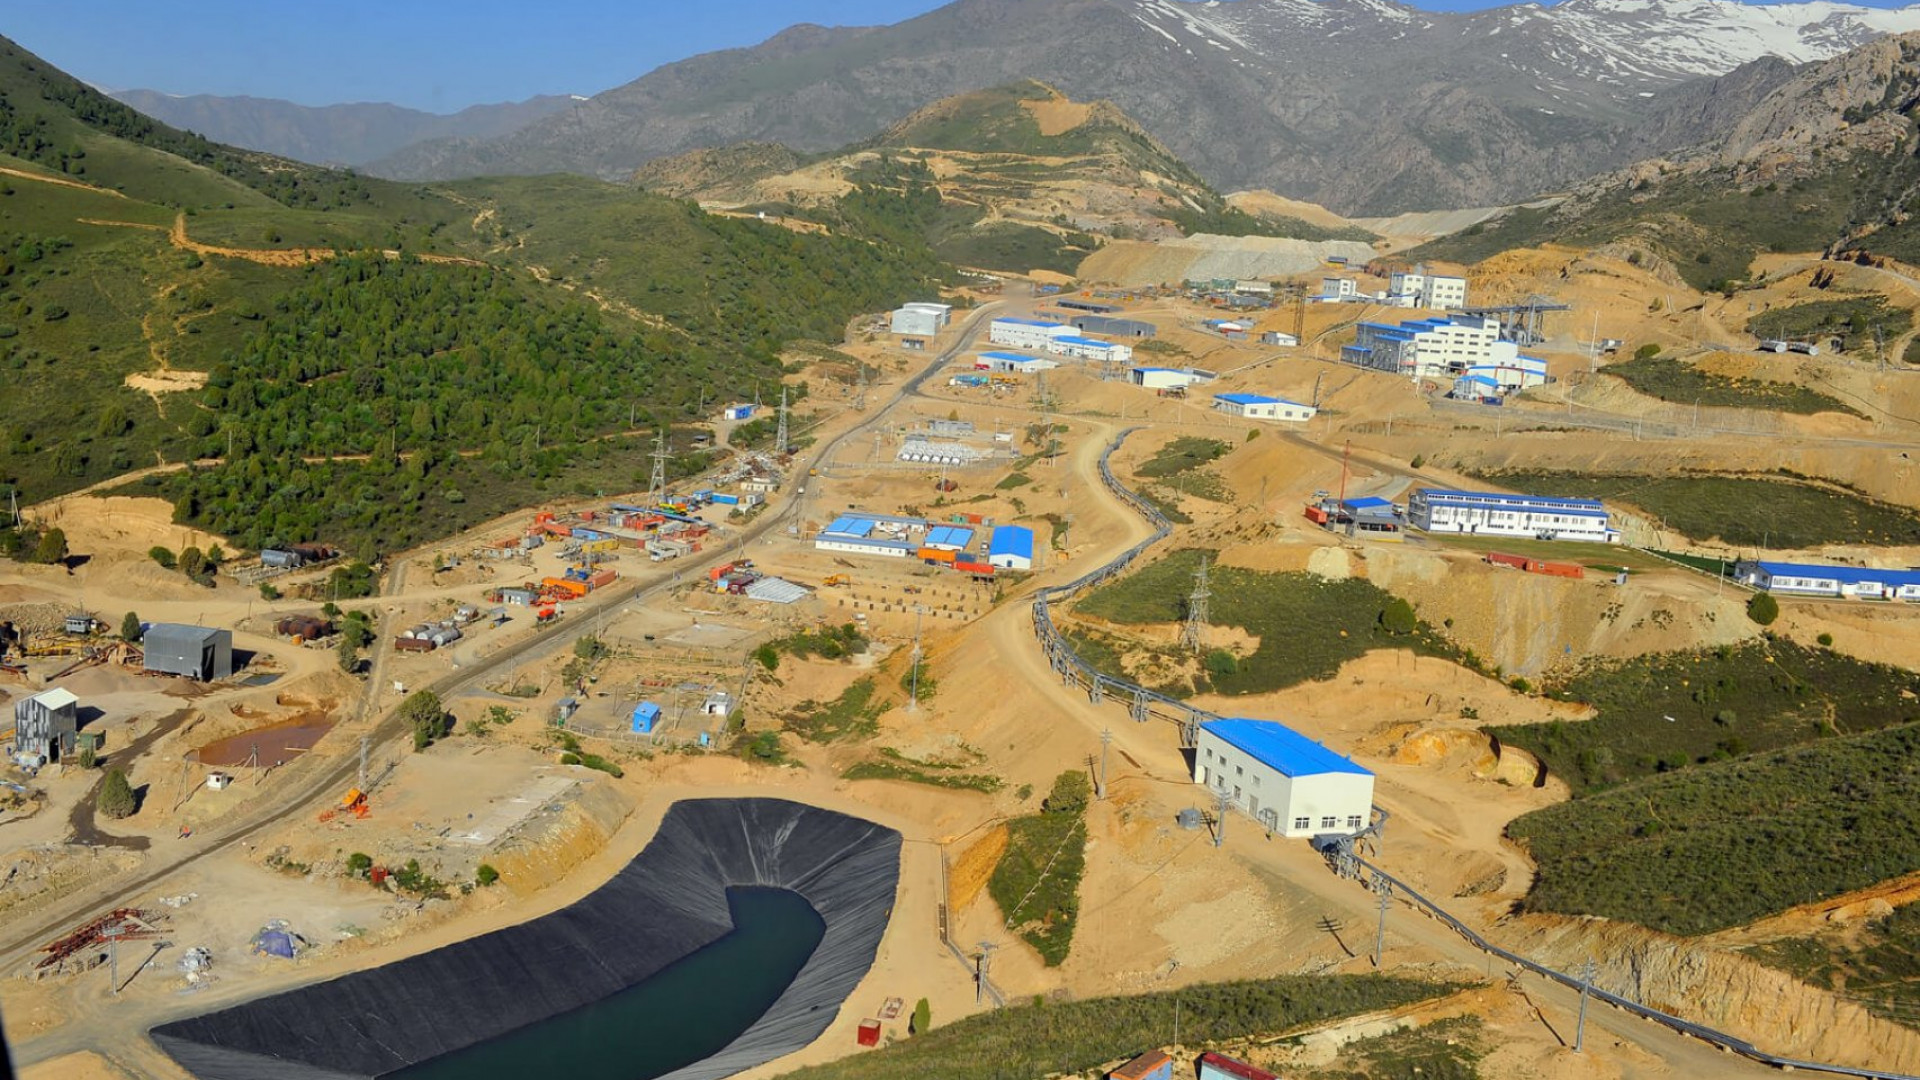 На руднике KAZ Minerals в Кыргызстане приостановили работу из-забеспорядков: 07 октября 2020, 19:14 - новости на Tengrinews.kz